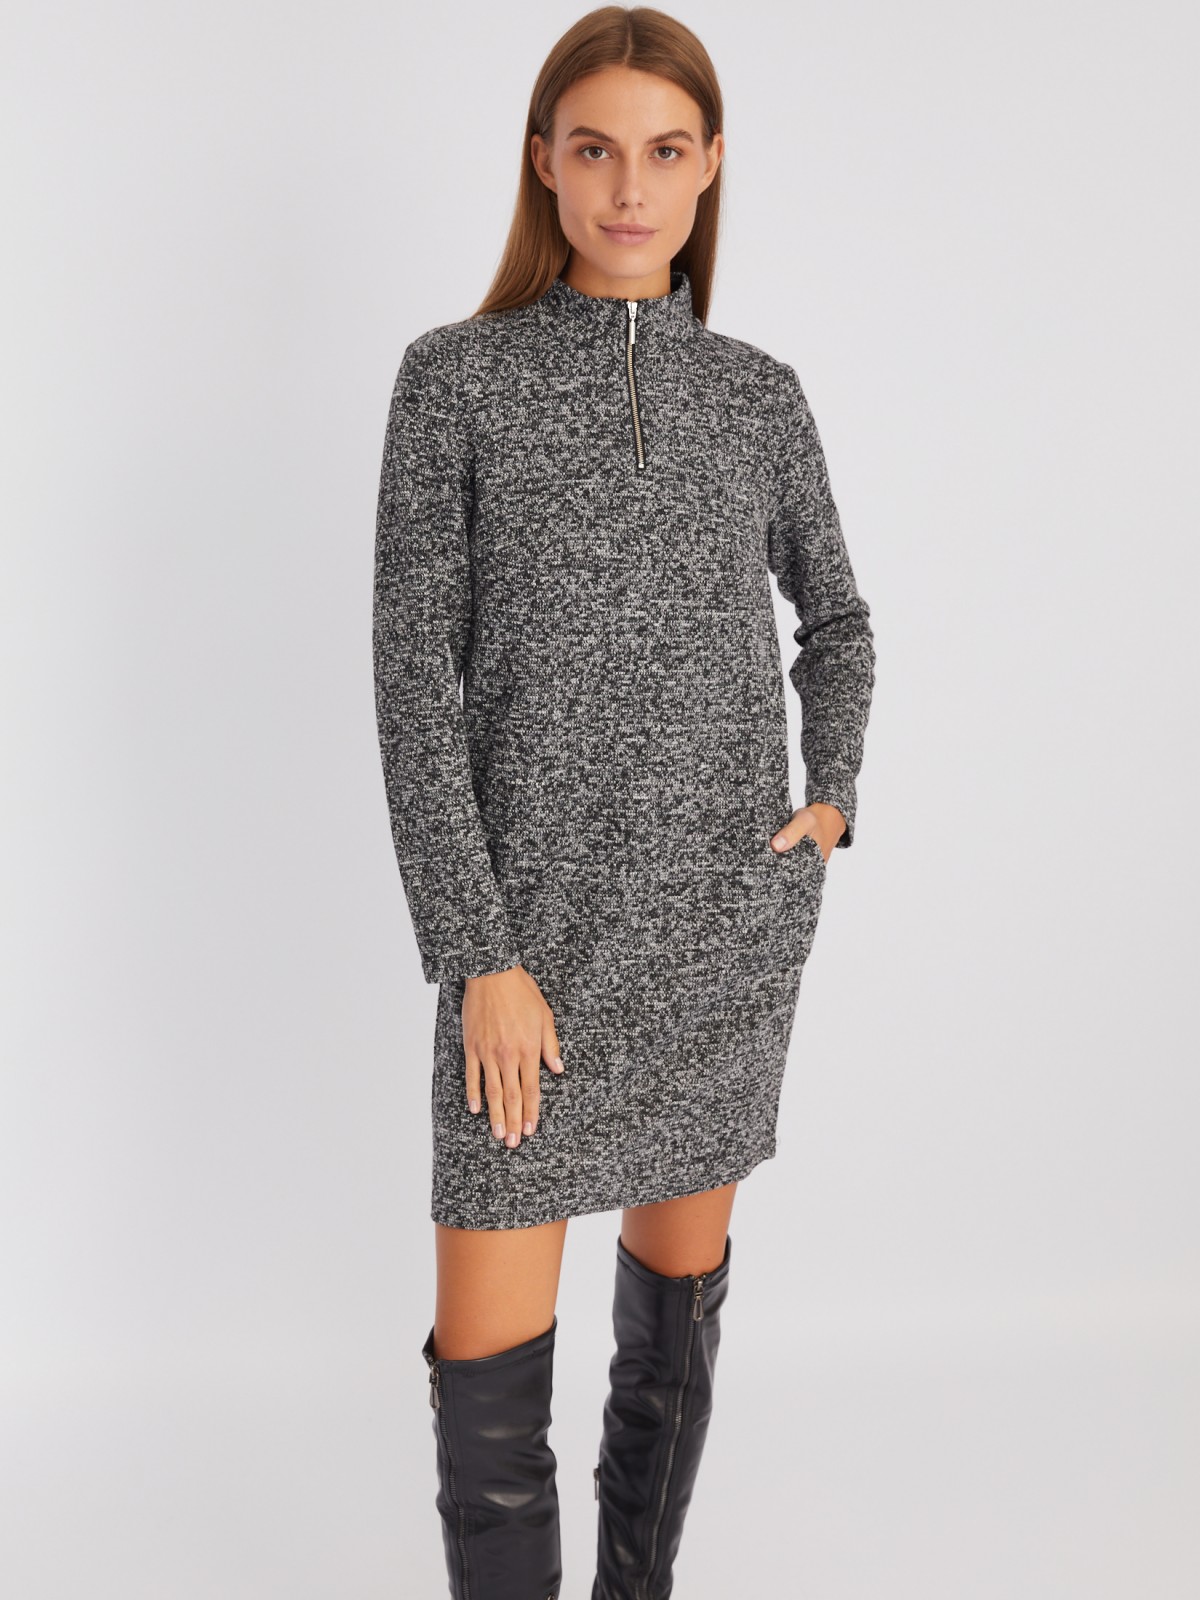 Трикотажное платье-свитер с горлом на молнии zolla 02343819F013, цвет серый, размер XS